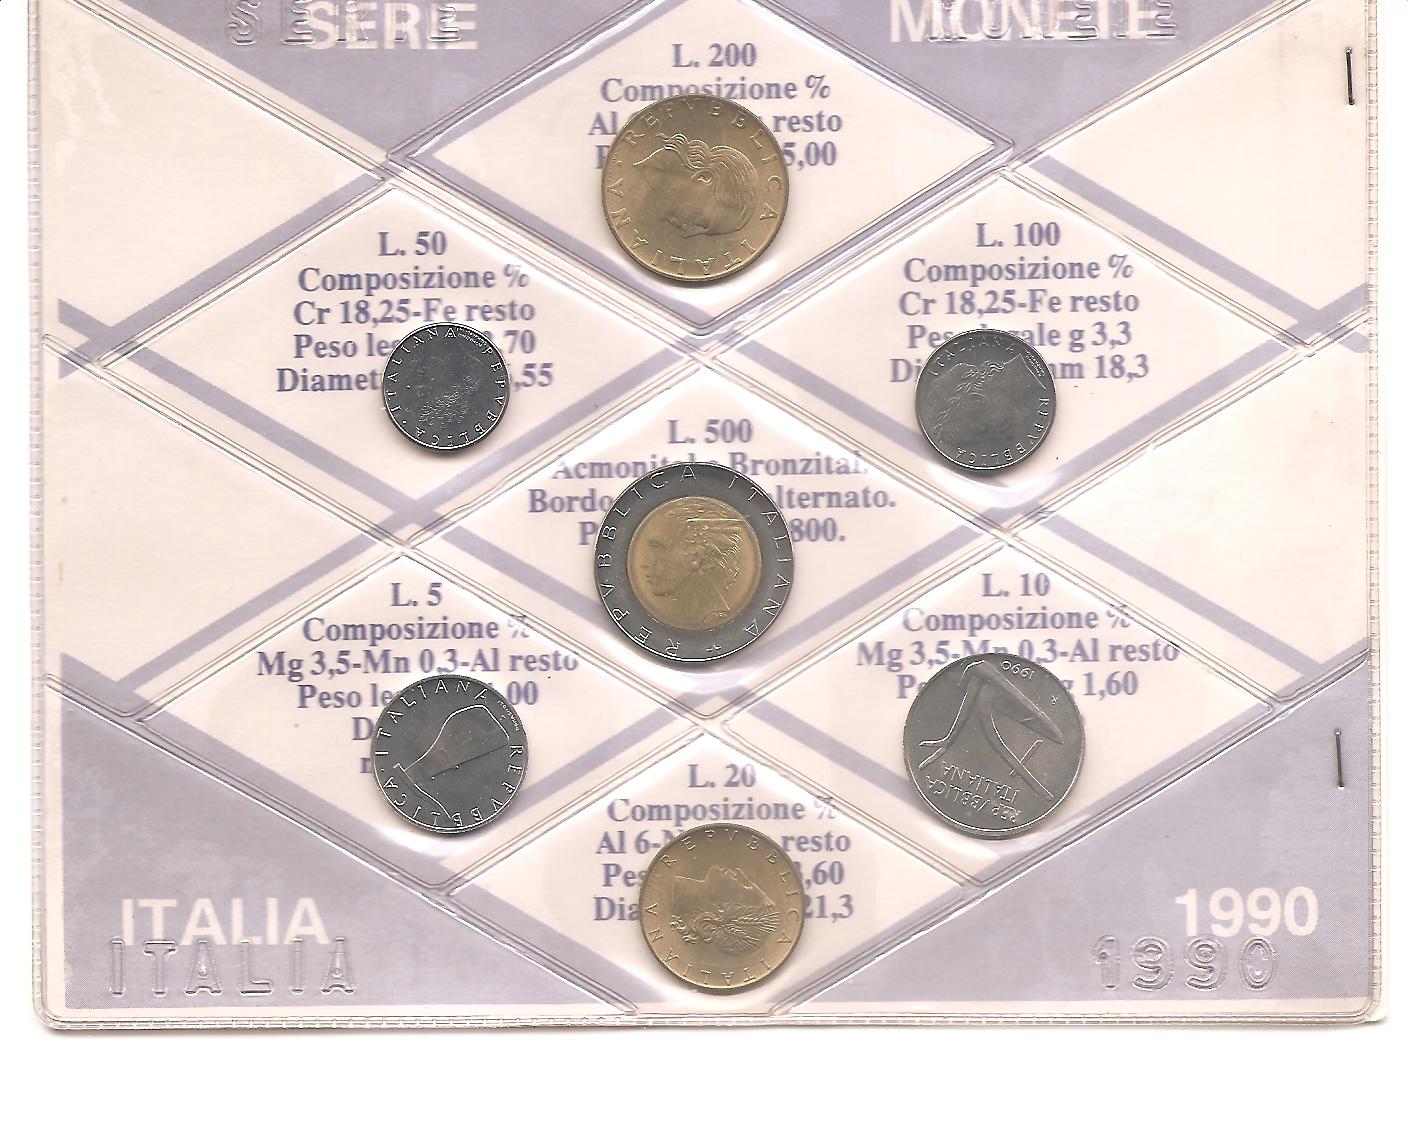 50527 - Italia - serie di monete a corso legale Fior di Conio in normale circolazione - 1990